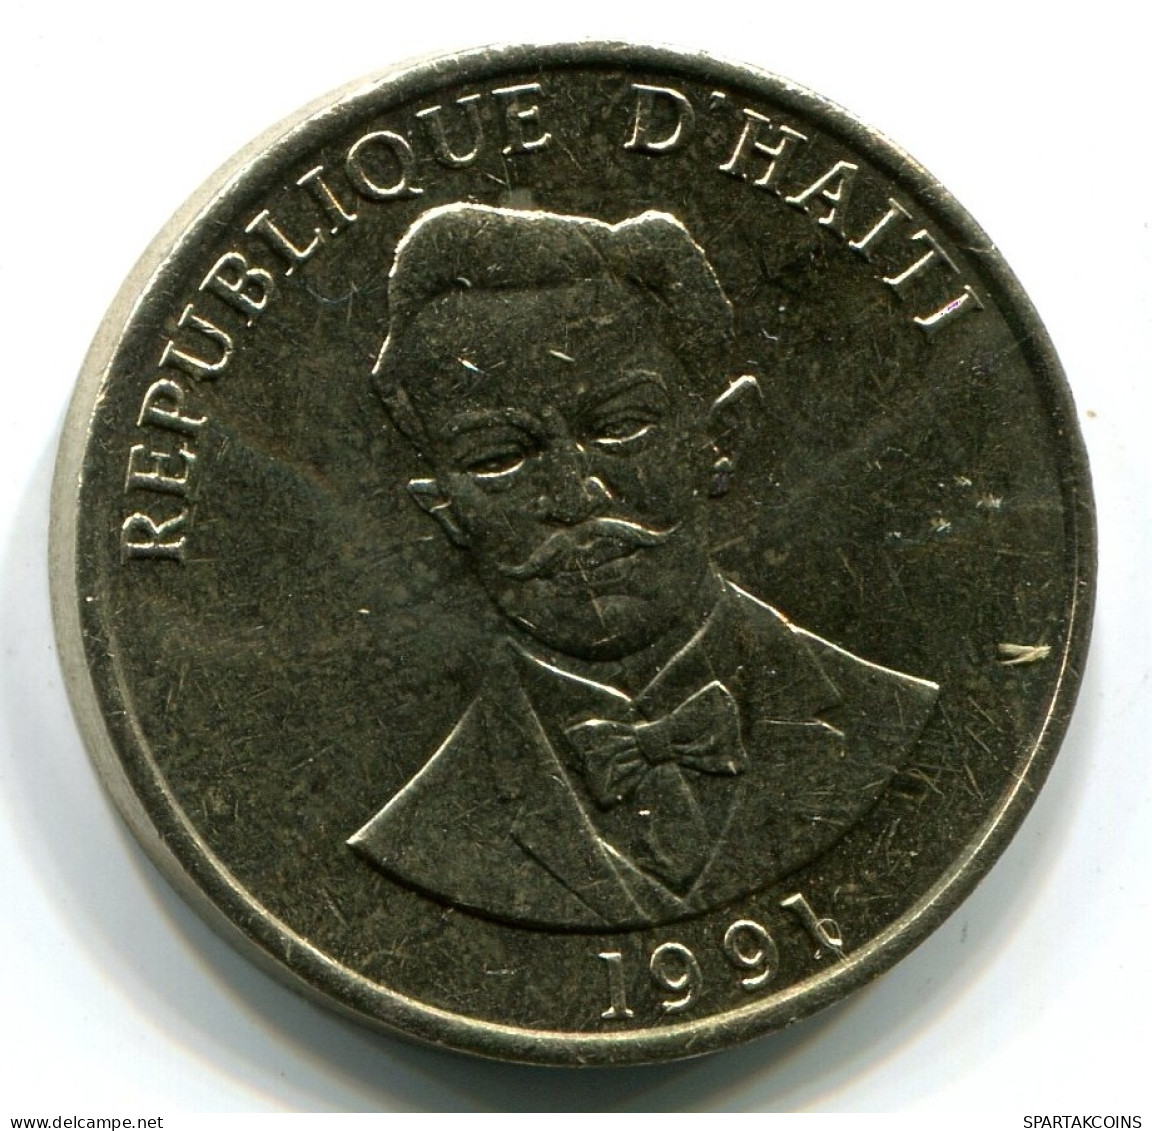 20 CENTIMES 1991 HAITI UNC Coin #W11005.U.A - Haiti